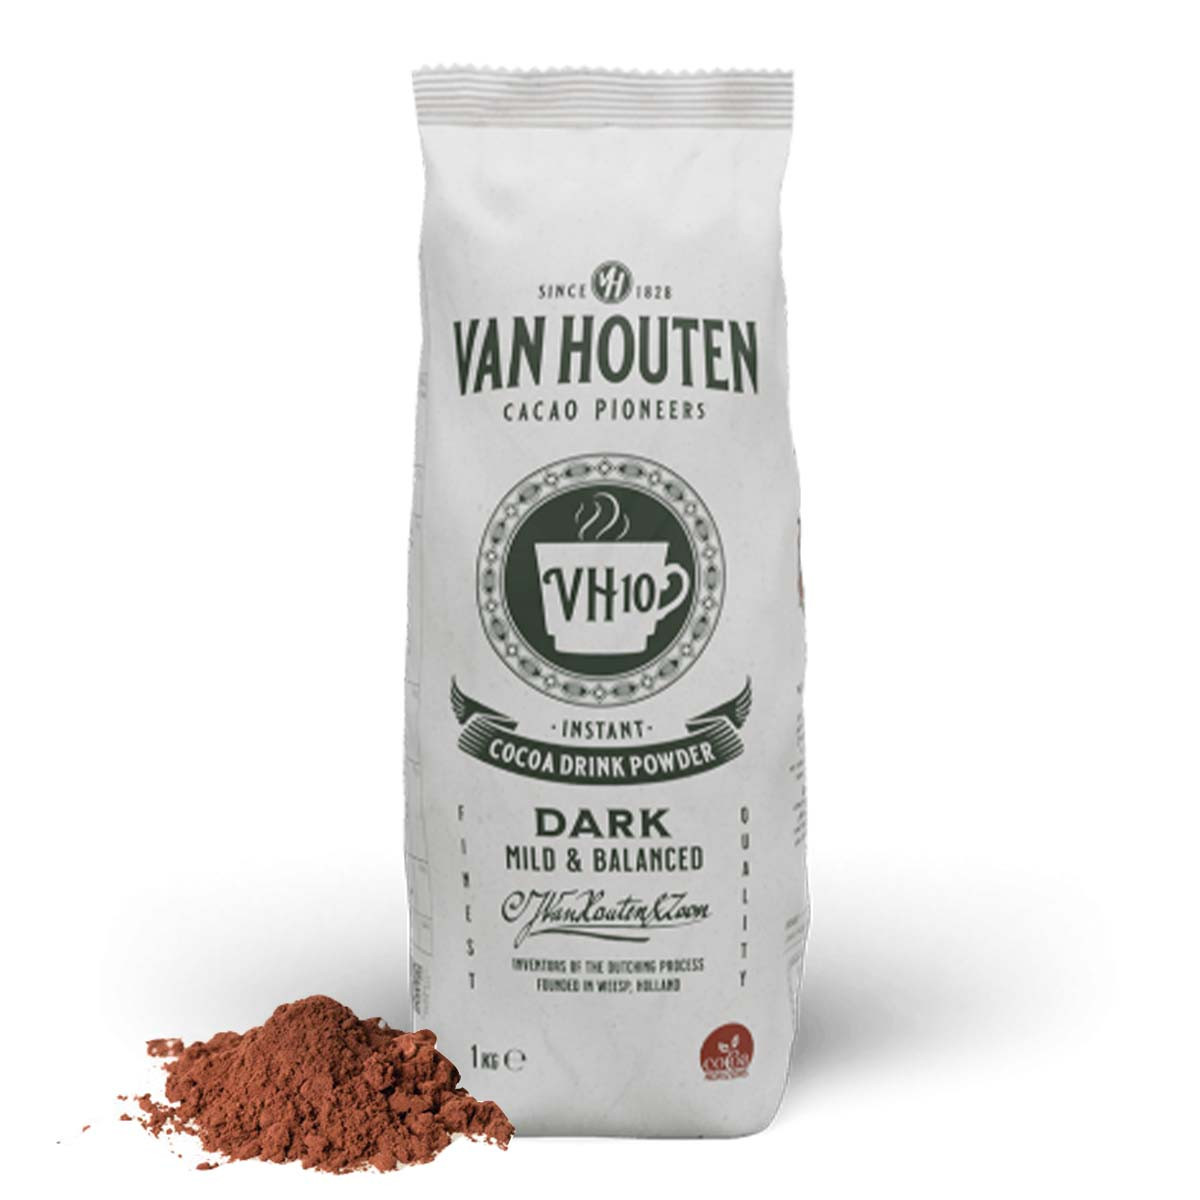 Van Houten, le cacao en procès